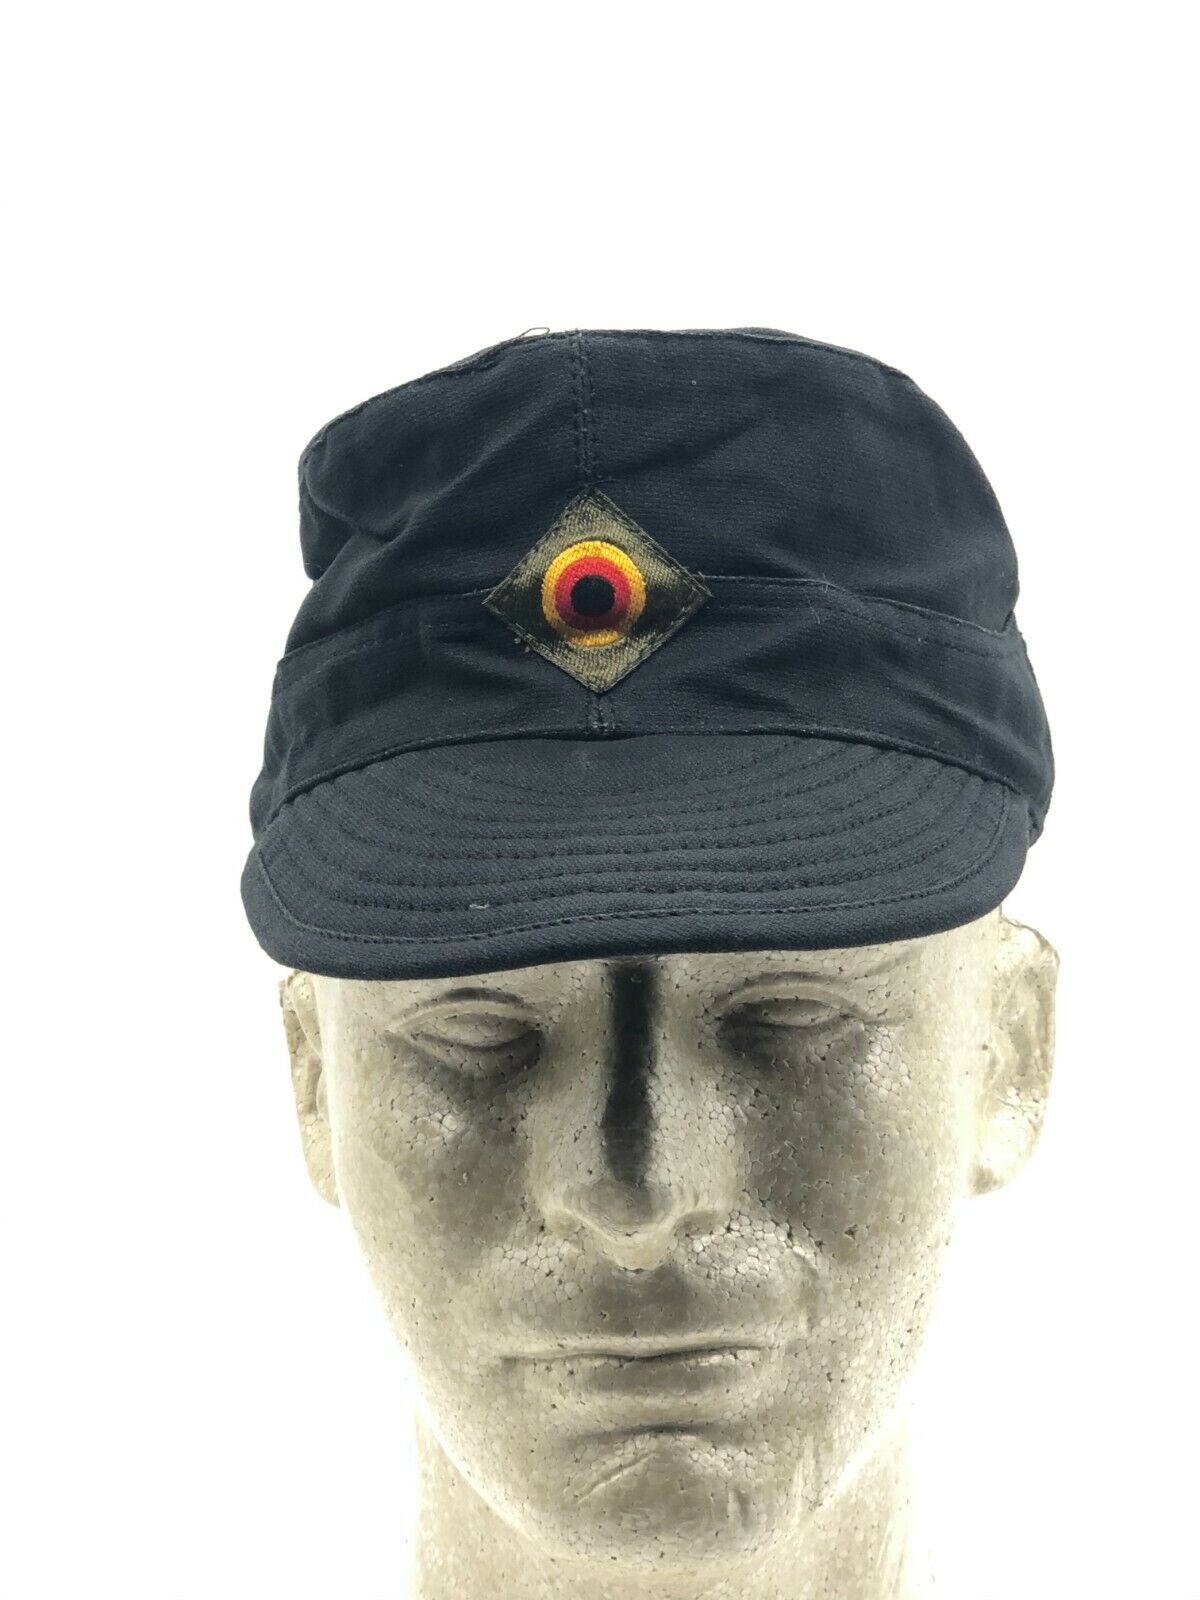 Vintage German Made Military Black Moleskin Field Hat, Blend, Large DDR 59